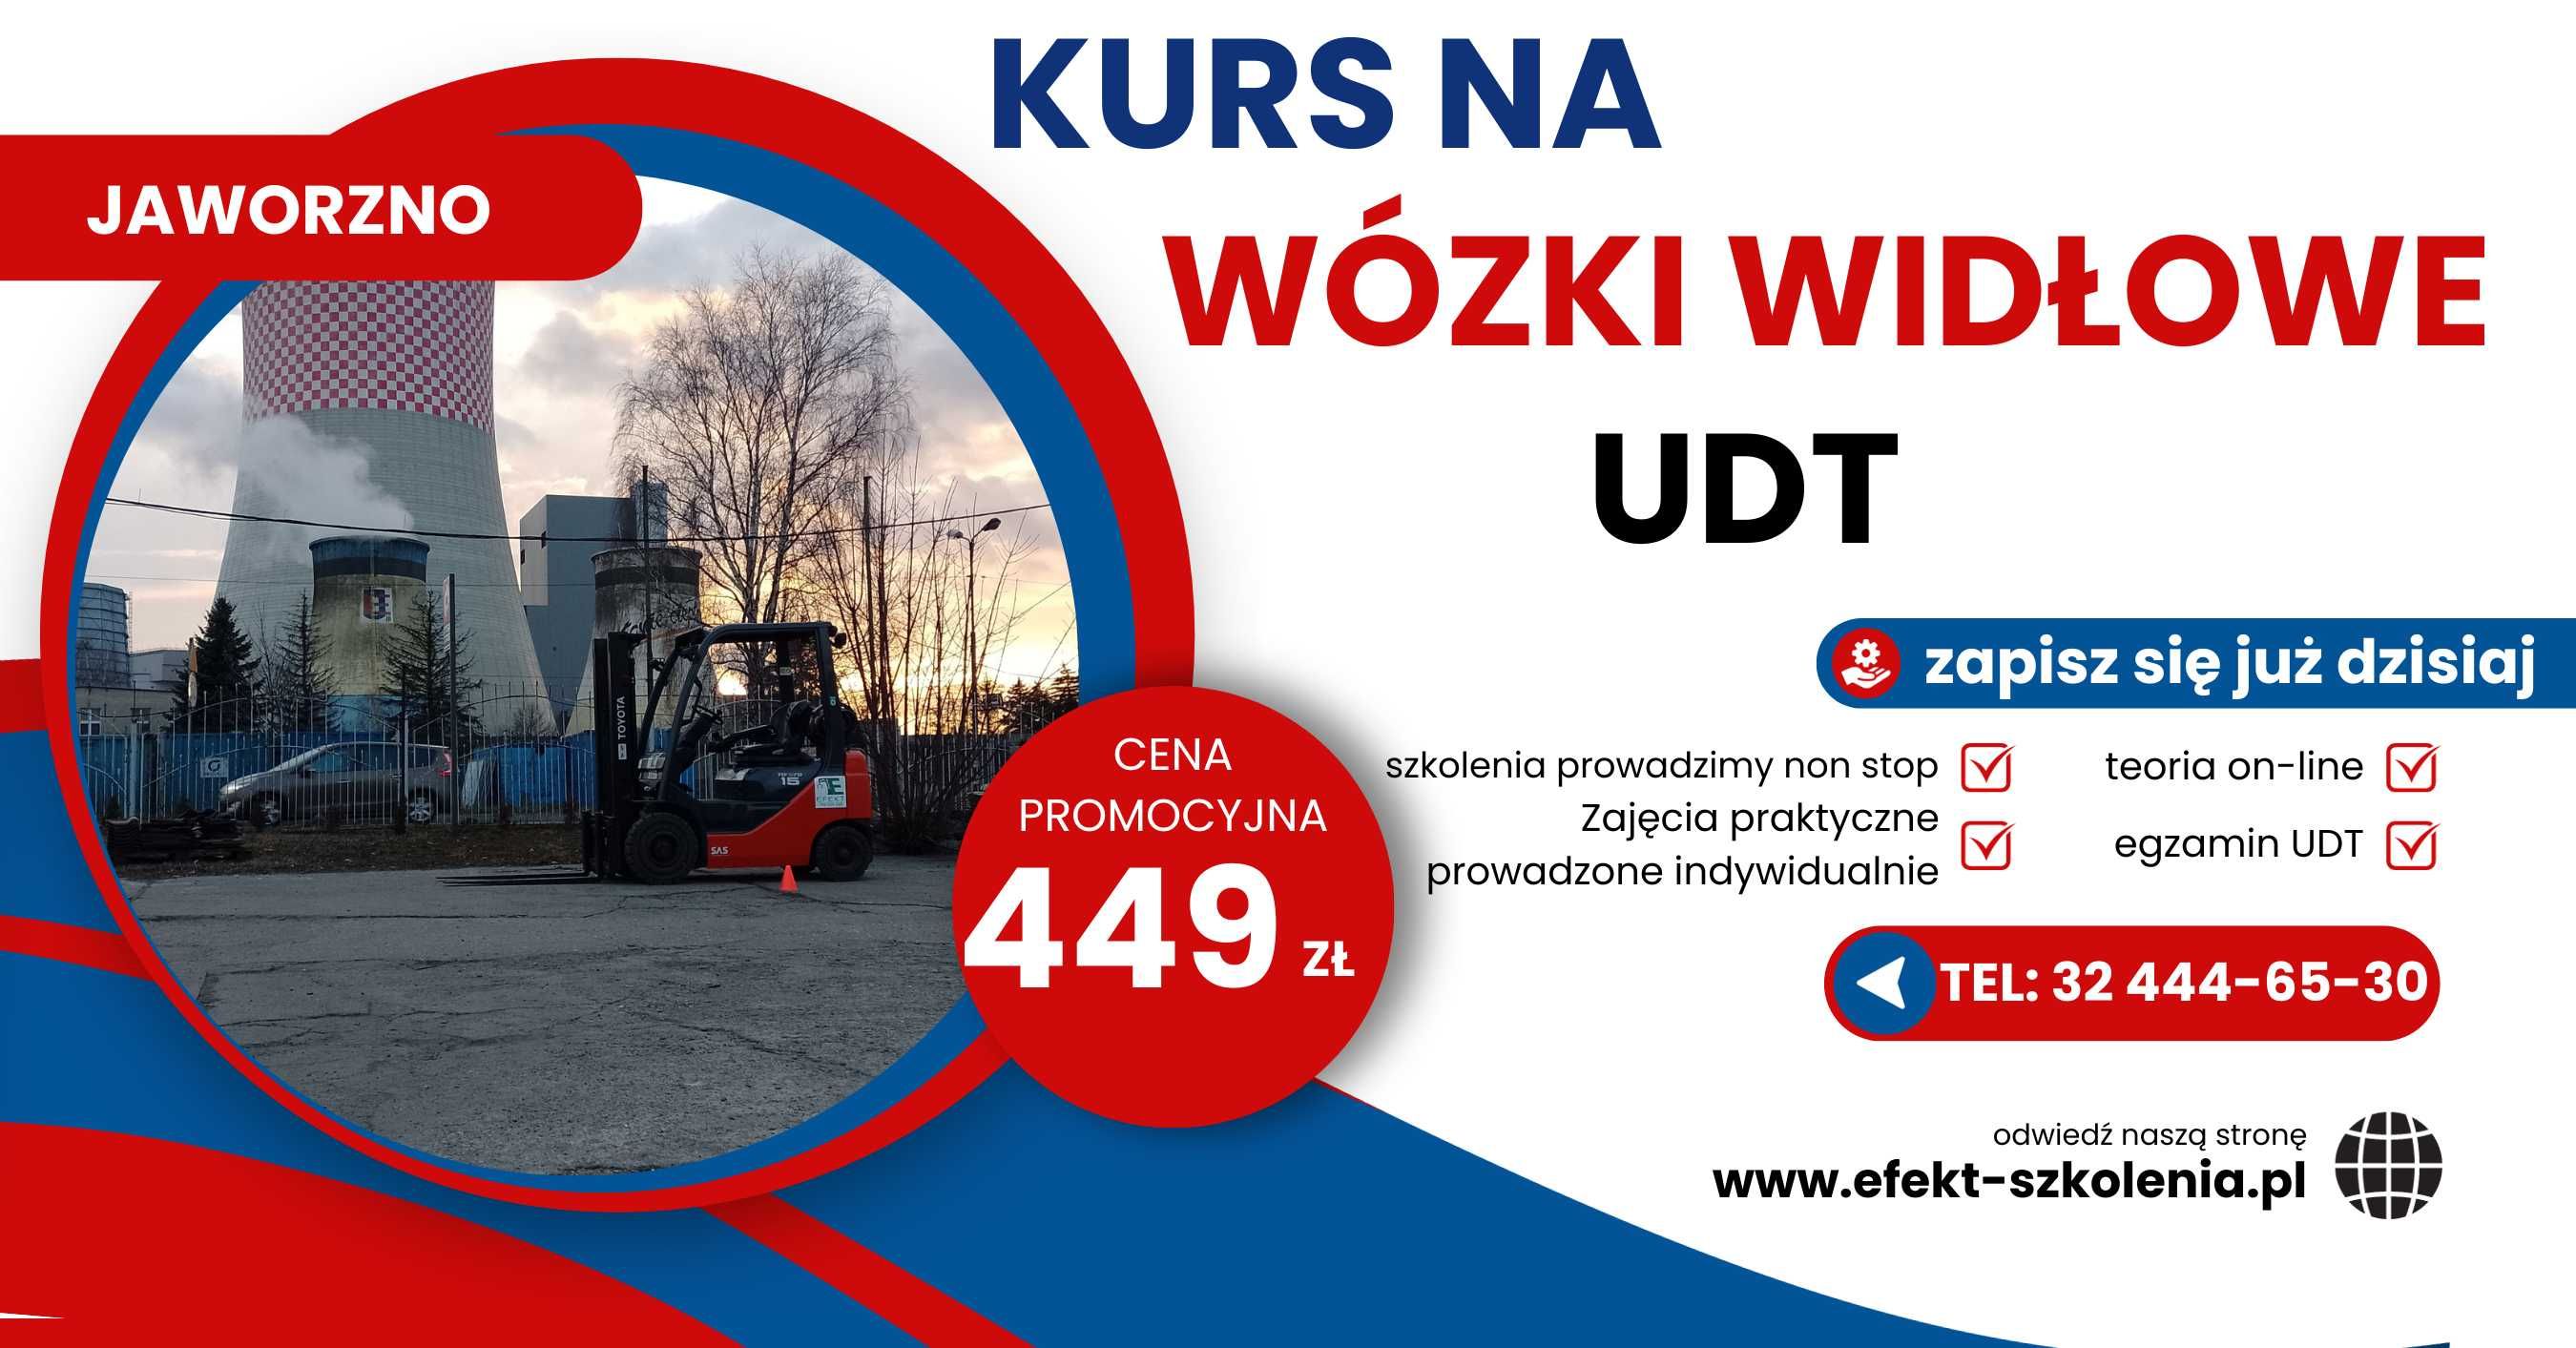 Kurs na wózki widłowe UDT Jaworzno - Cena promocyjna